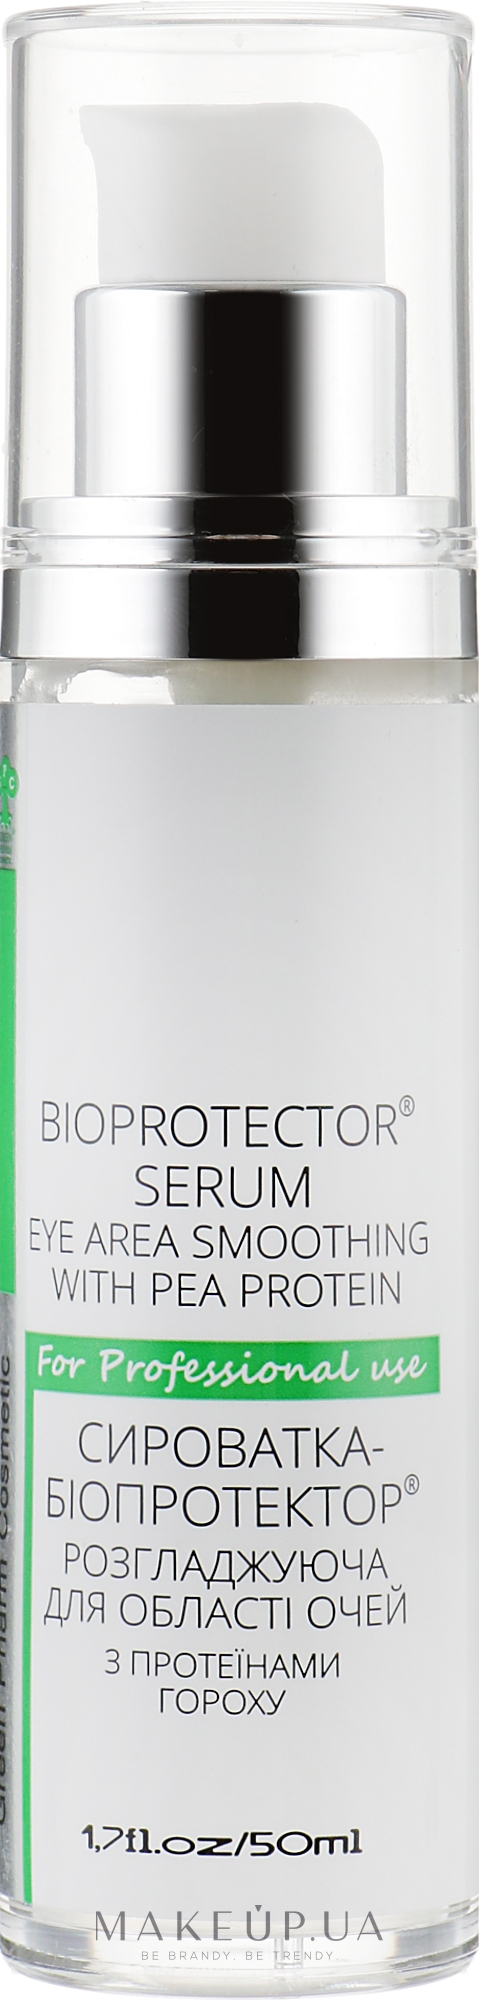 Сироватка-біопротектор розгладжуюча для області очей з протеїнами гороху - Green Pharm Cosmetic PH 5,5 — фото 50ml